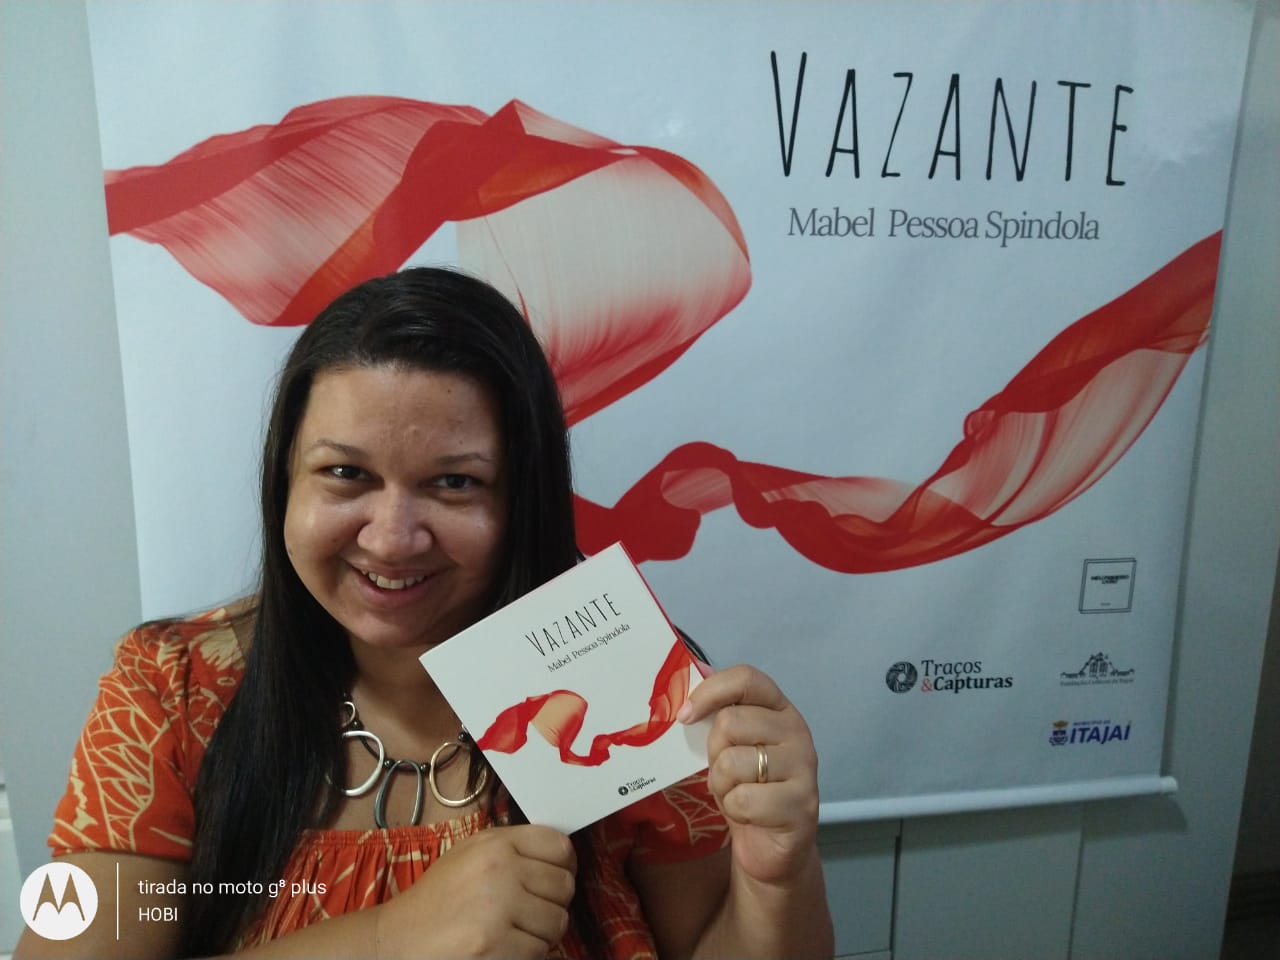 Escritora Mabel Pessoa Spindola lança o livro “Vazante”